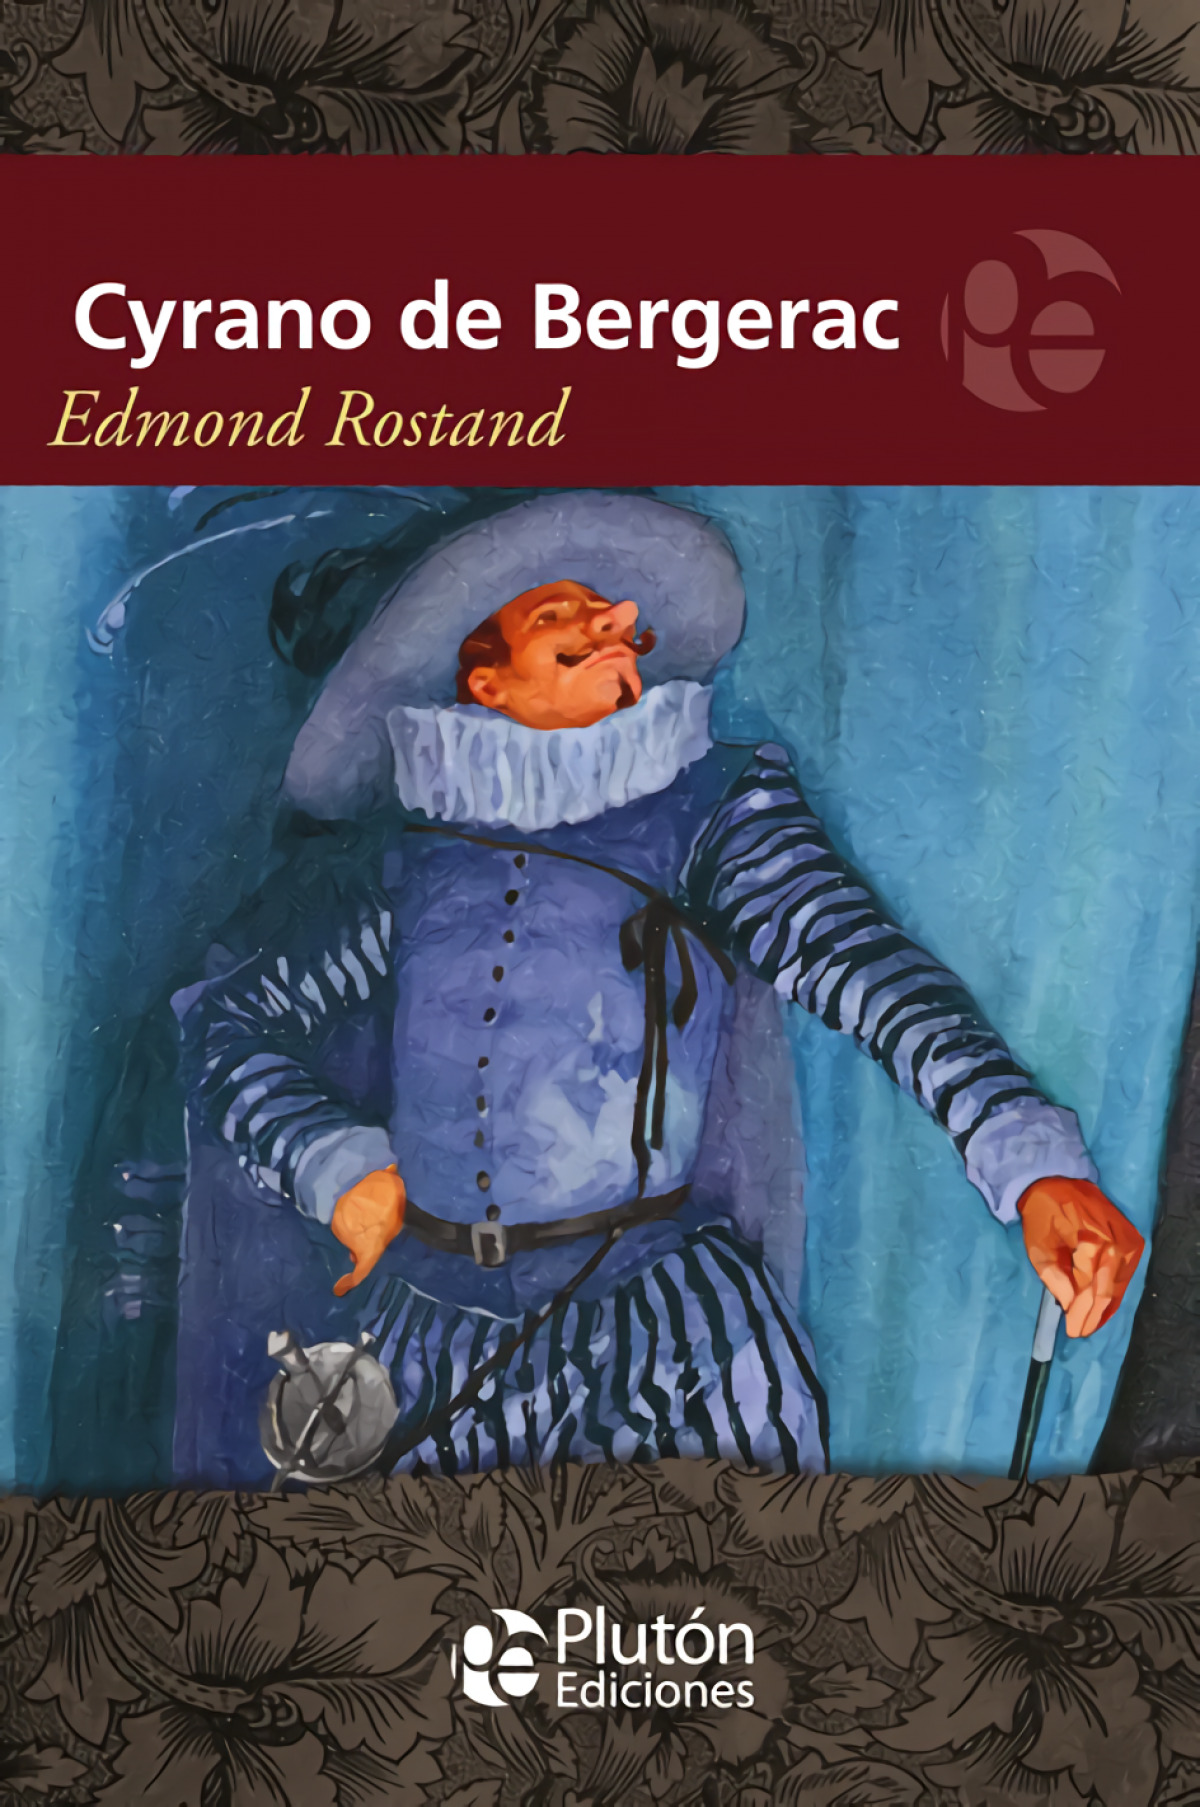 Cyrano de bergerac - Edmond Rostand